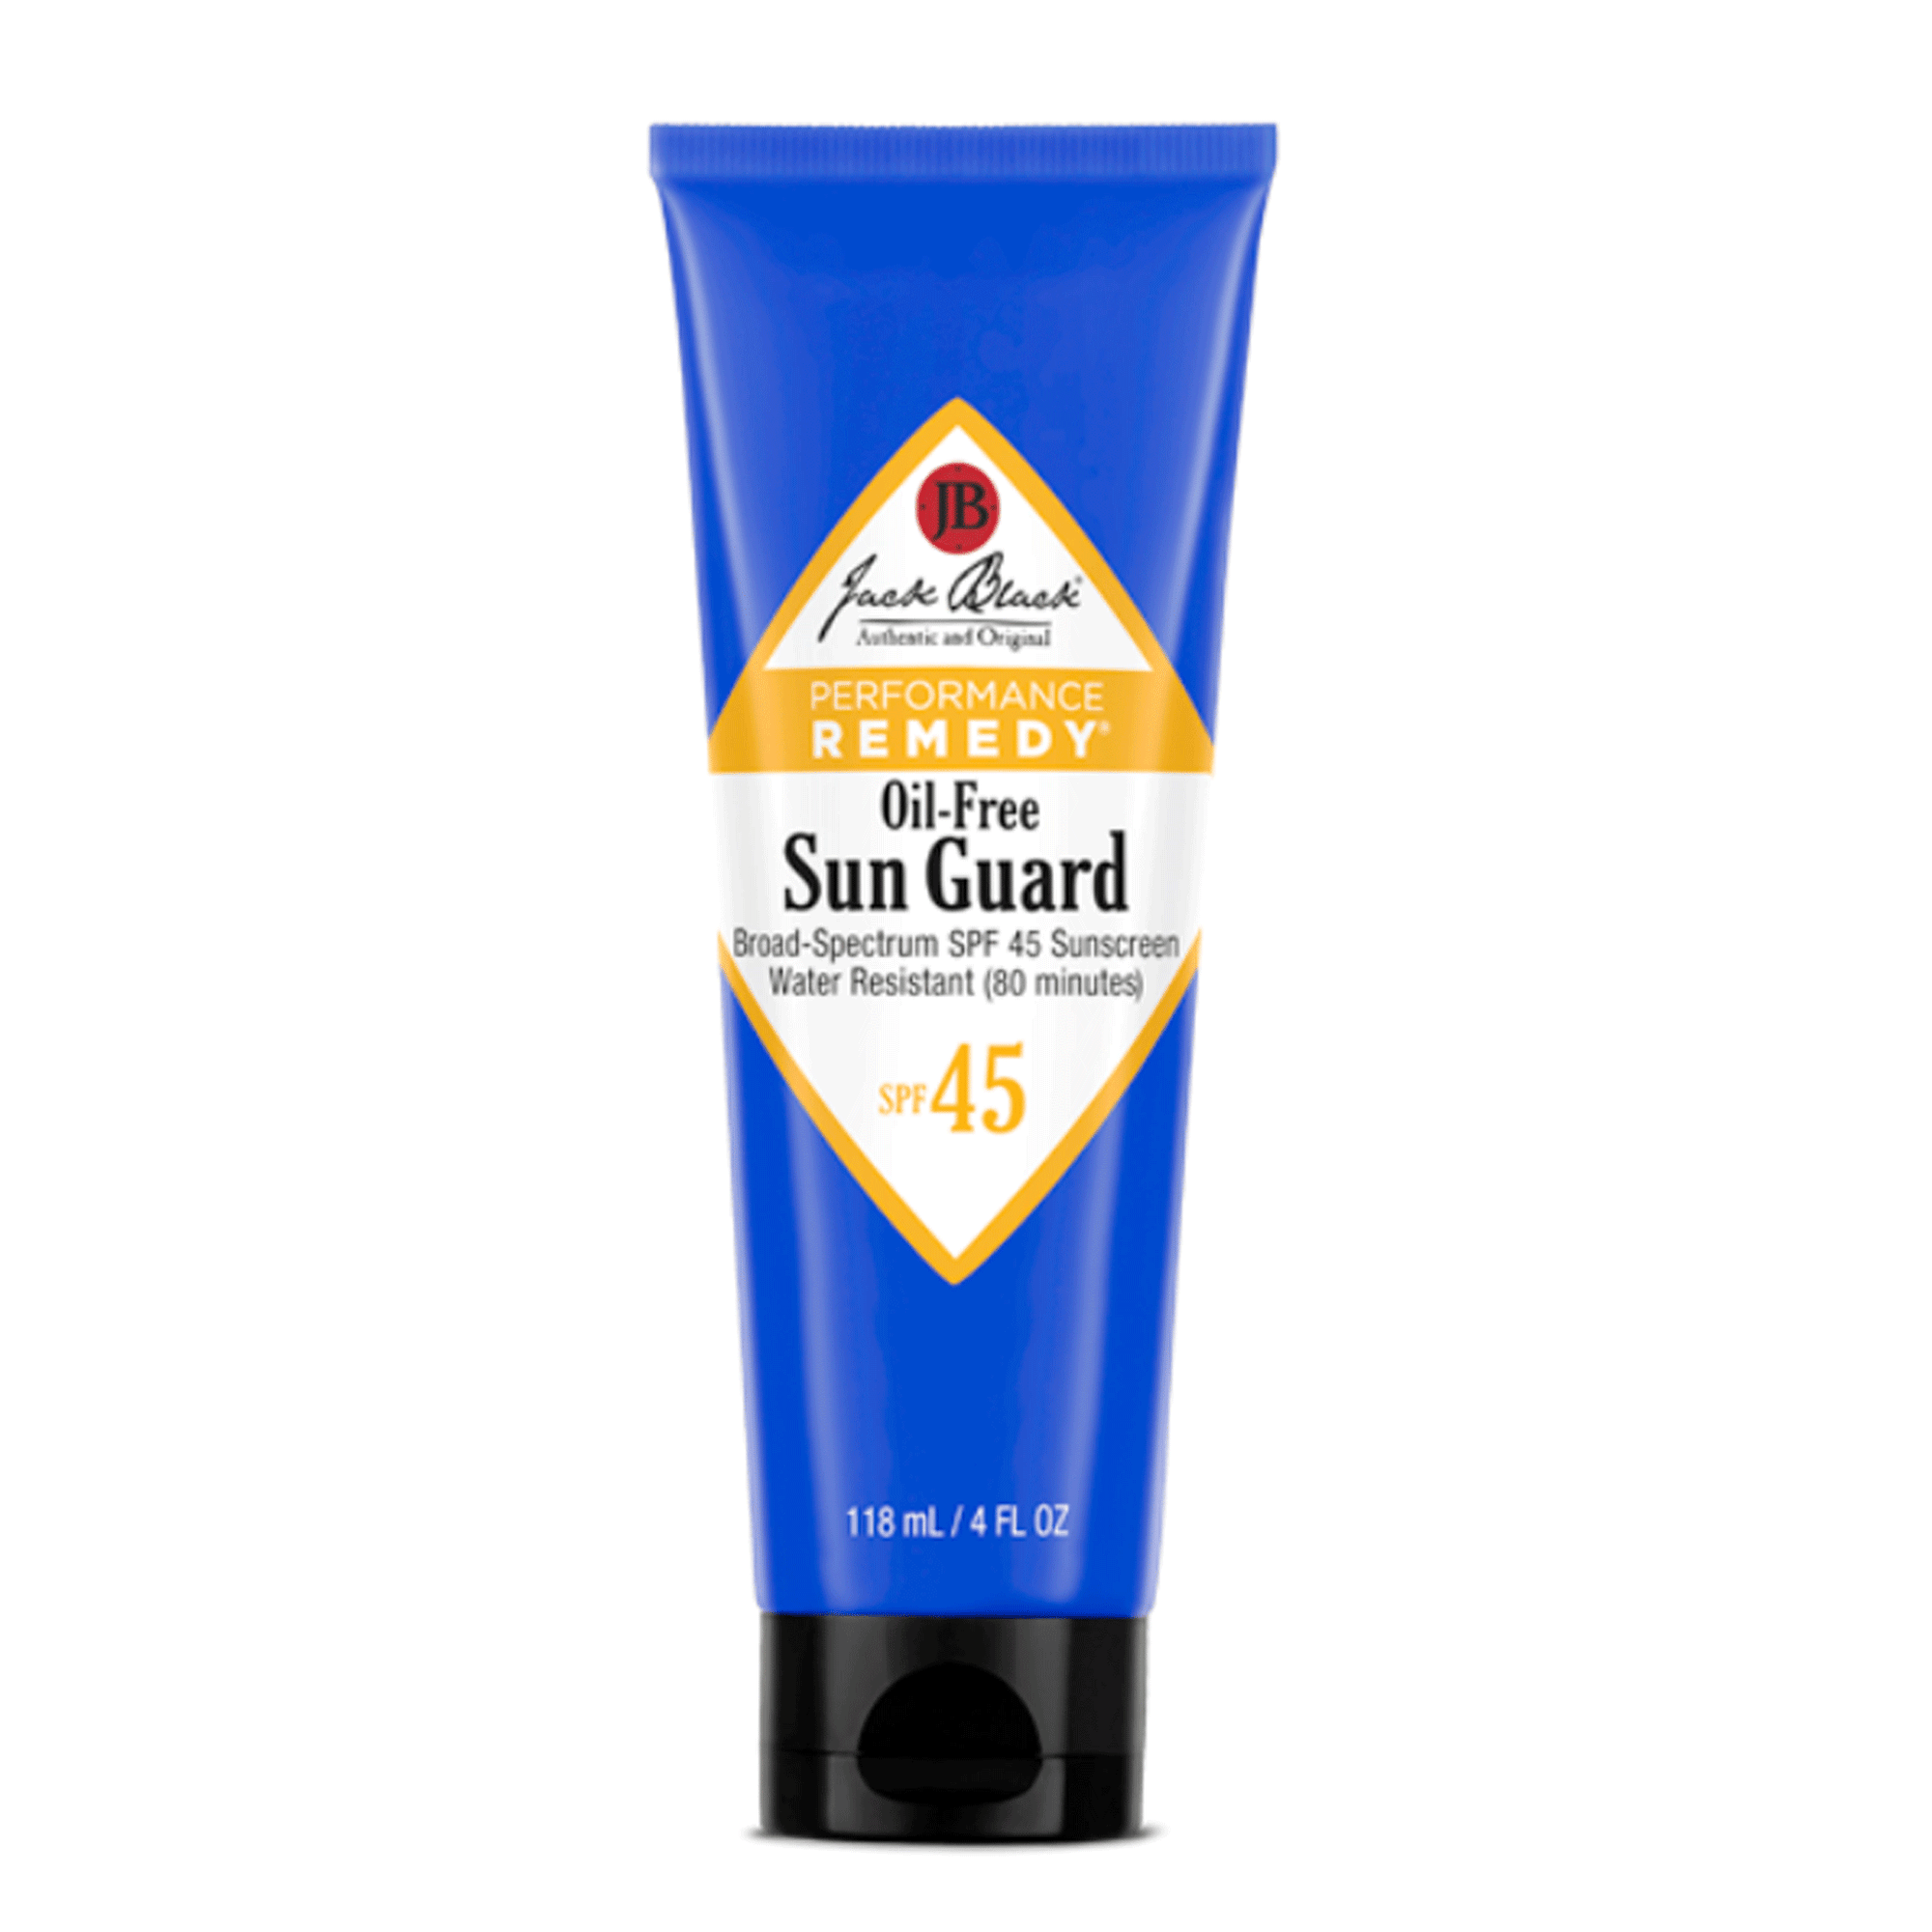 Sun Guard SPF 45